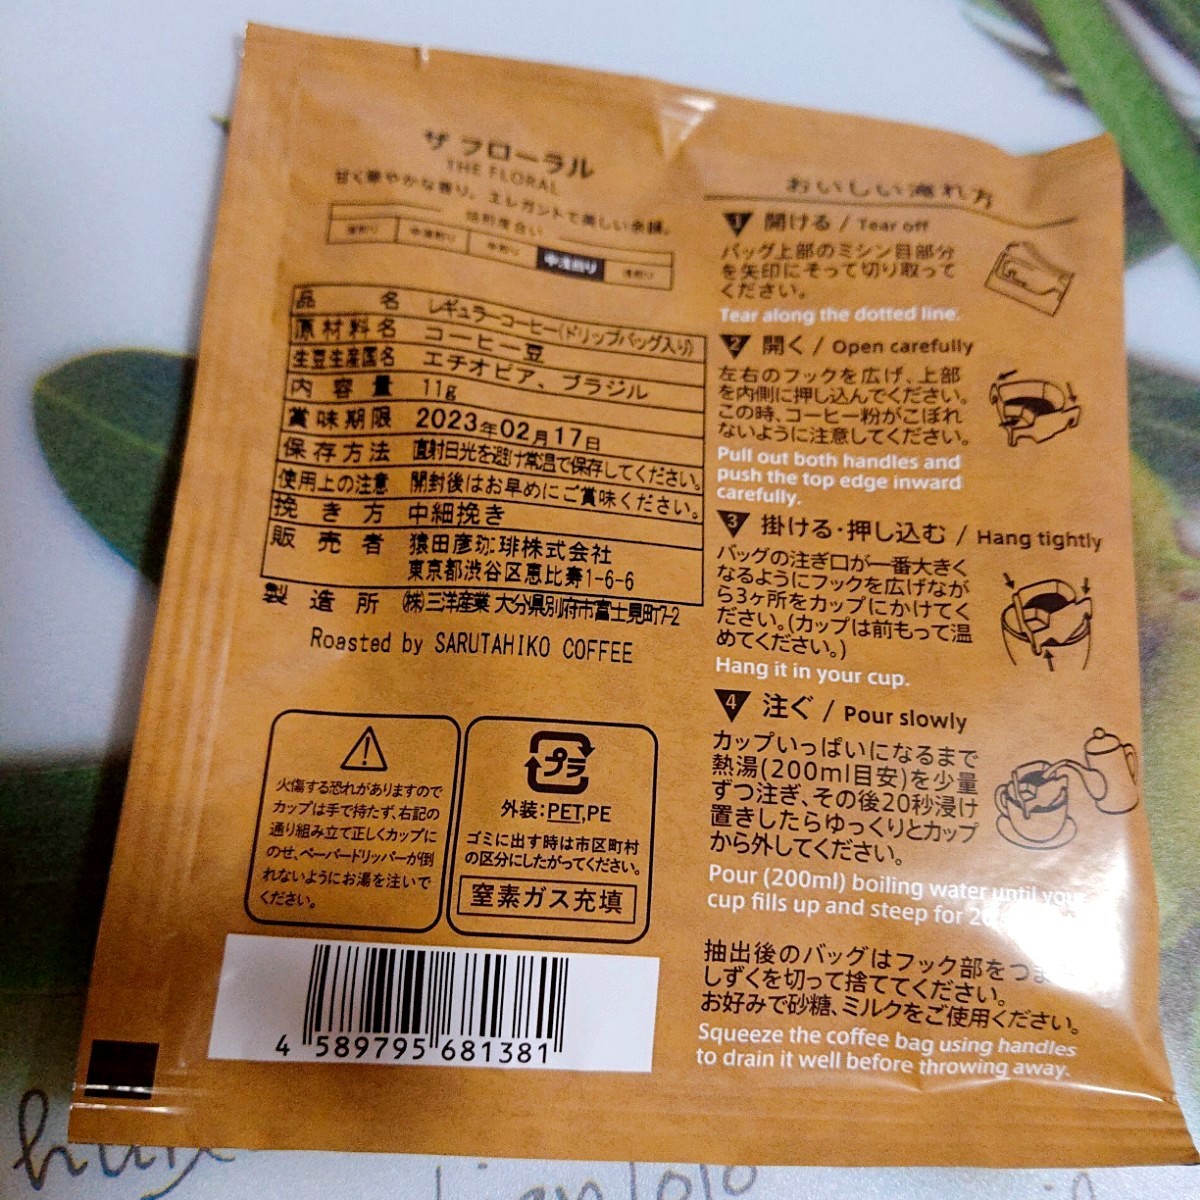 猿田彦珈琲　SARUTAHIKO COFFEE  ザ フローラル  ドリップパック 11g ×15袋